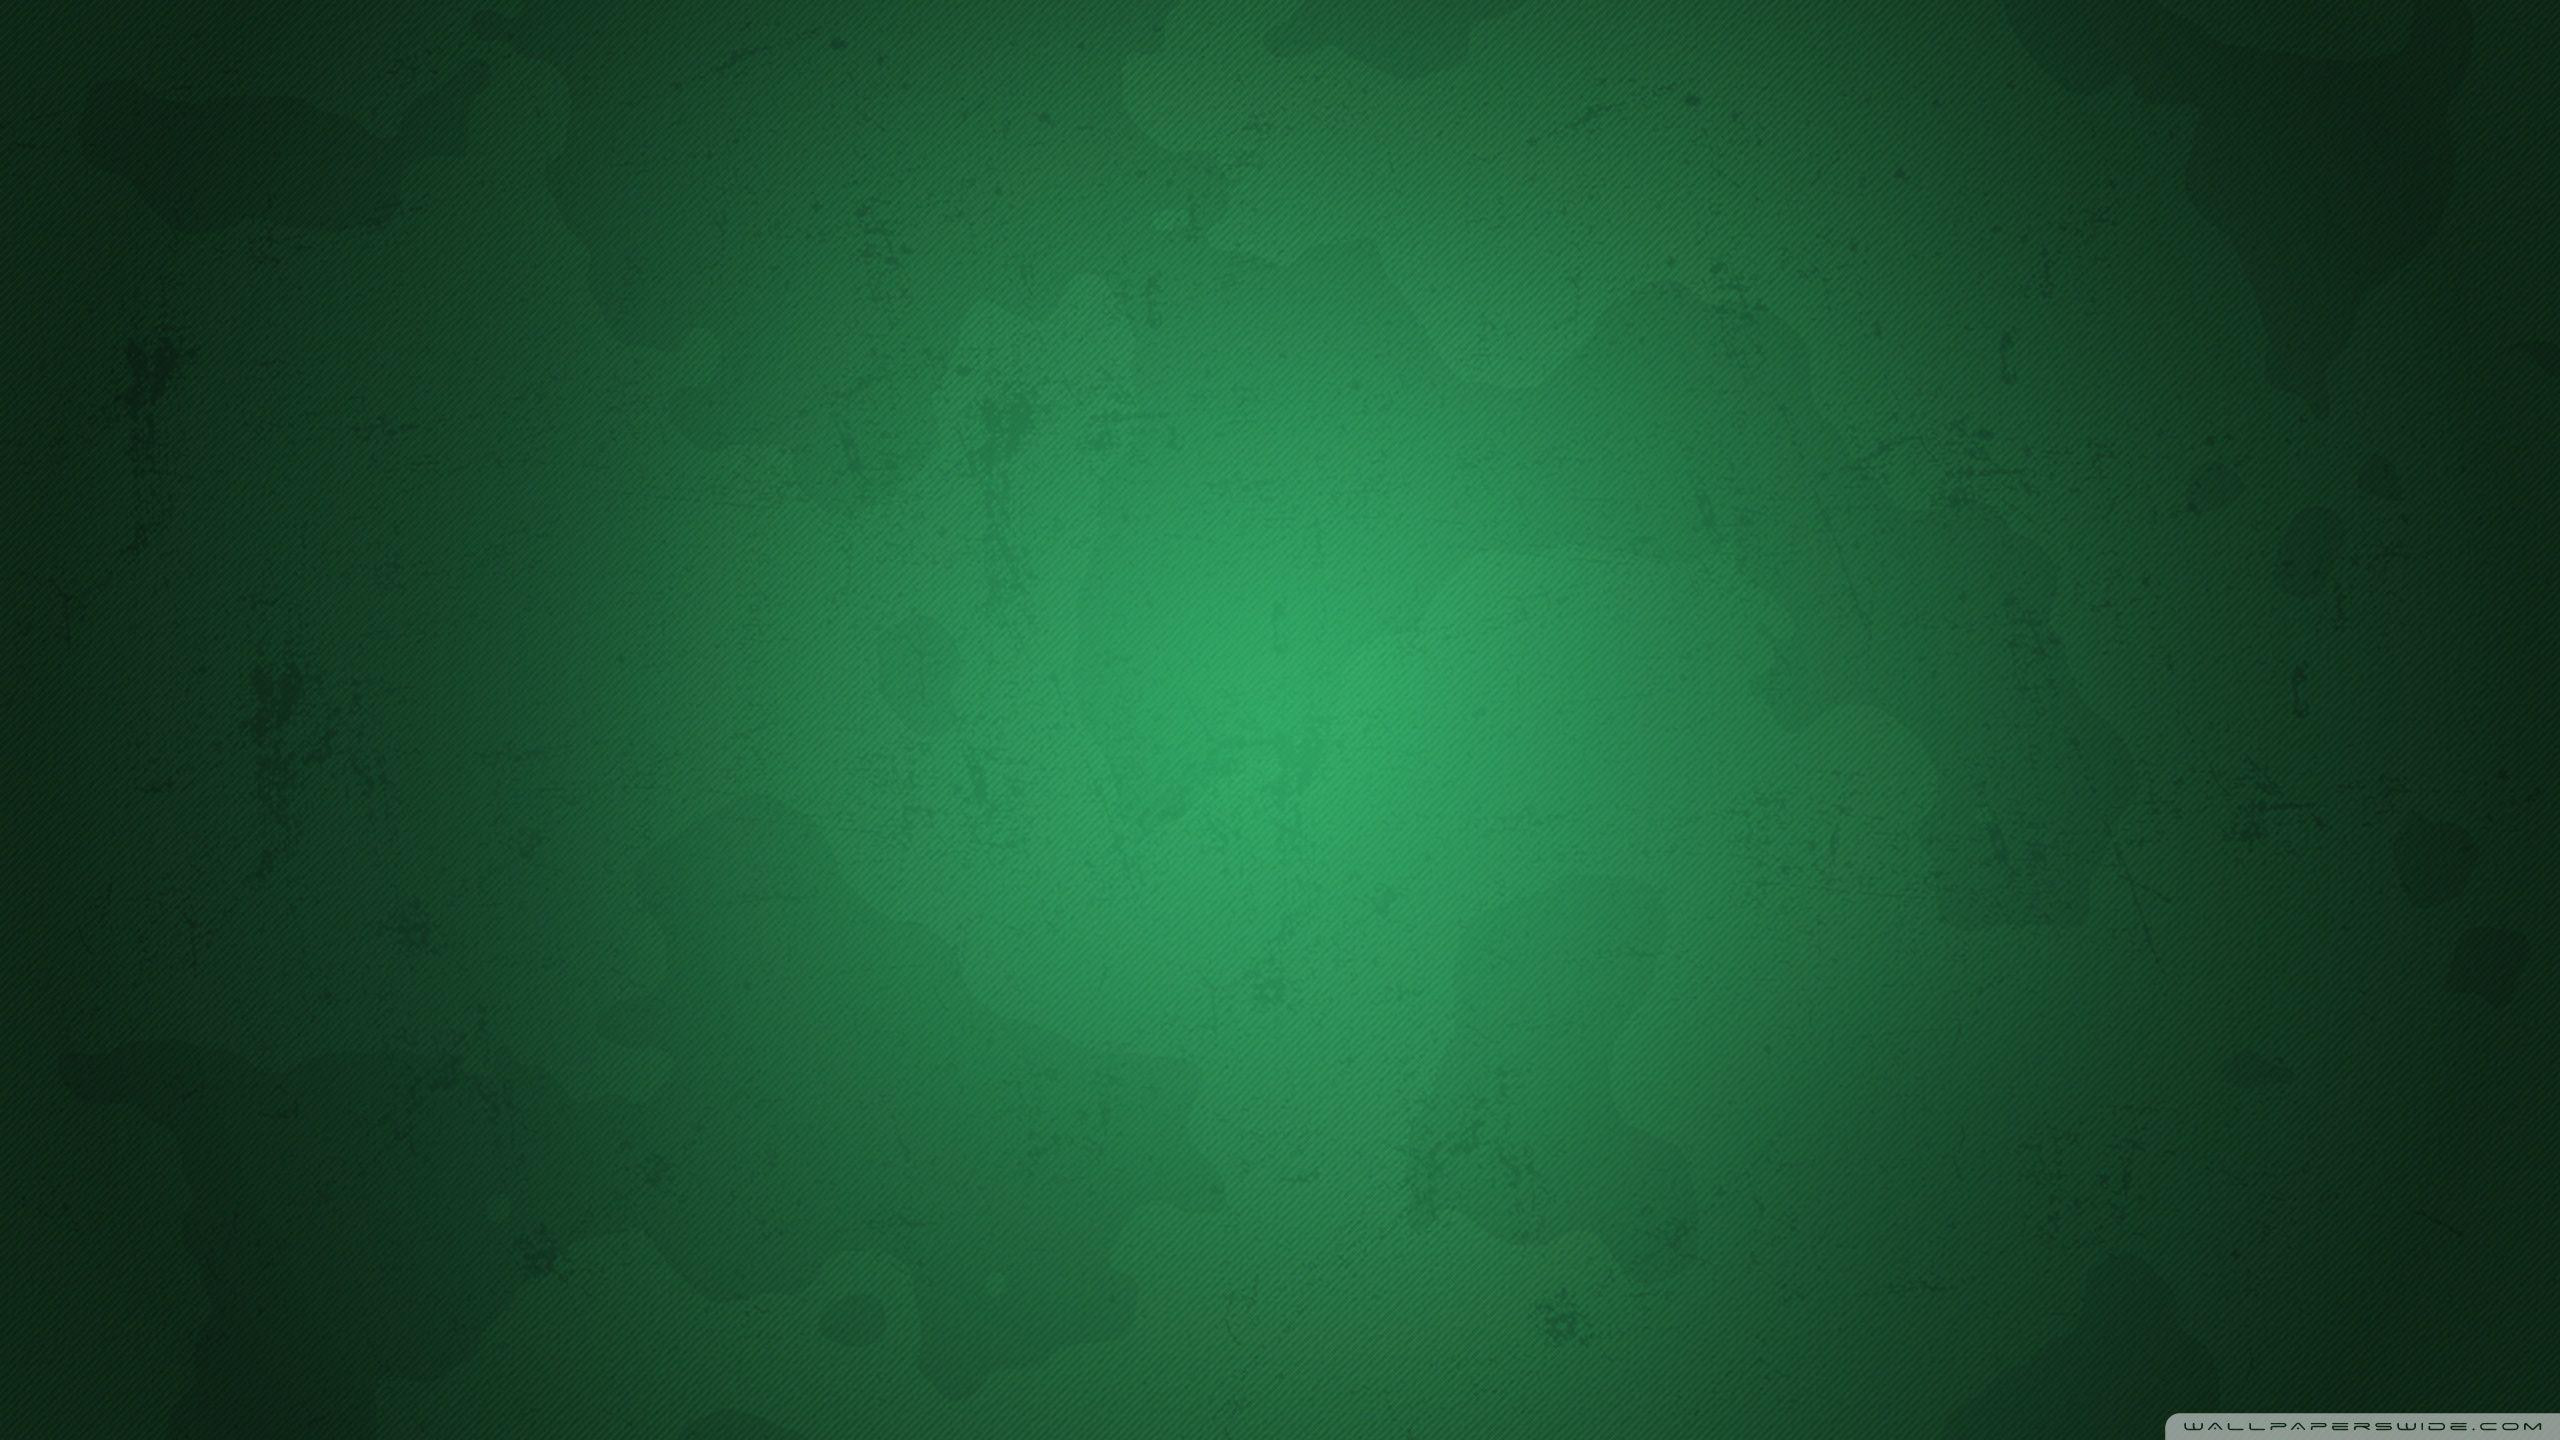 Green Grunge được xem là một xu hướng mới của thiết kế hình ảnh, mang lại sự sáng tạo và cá tính cho màn hình thiết bị của bạn. Các hình nền Green Grunge sẽ làm cho các thiết bị của bạn nổi bật giữa những thiết bị thông thường.